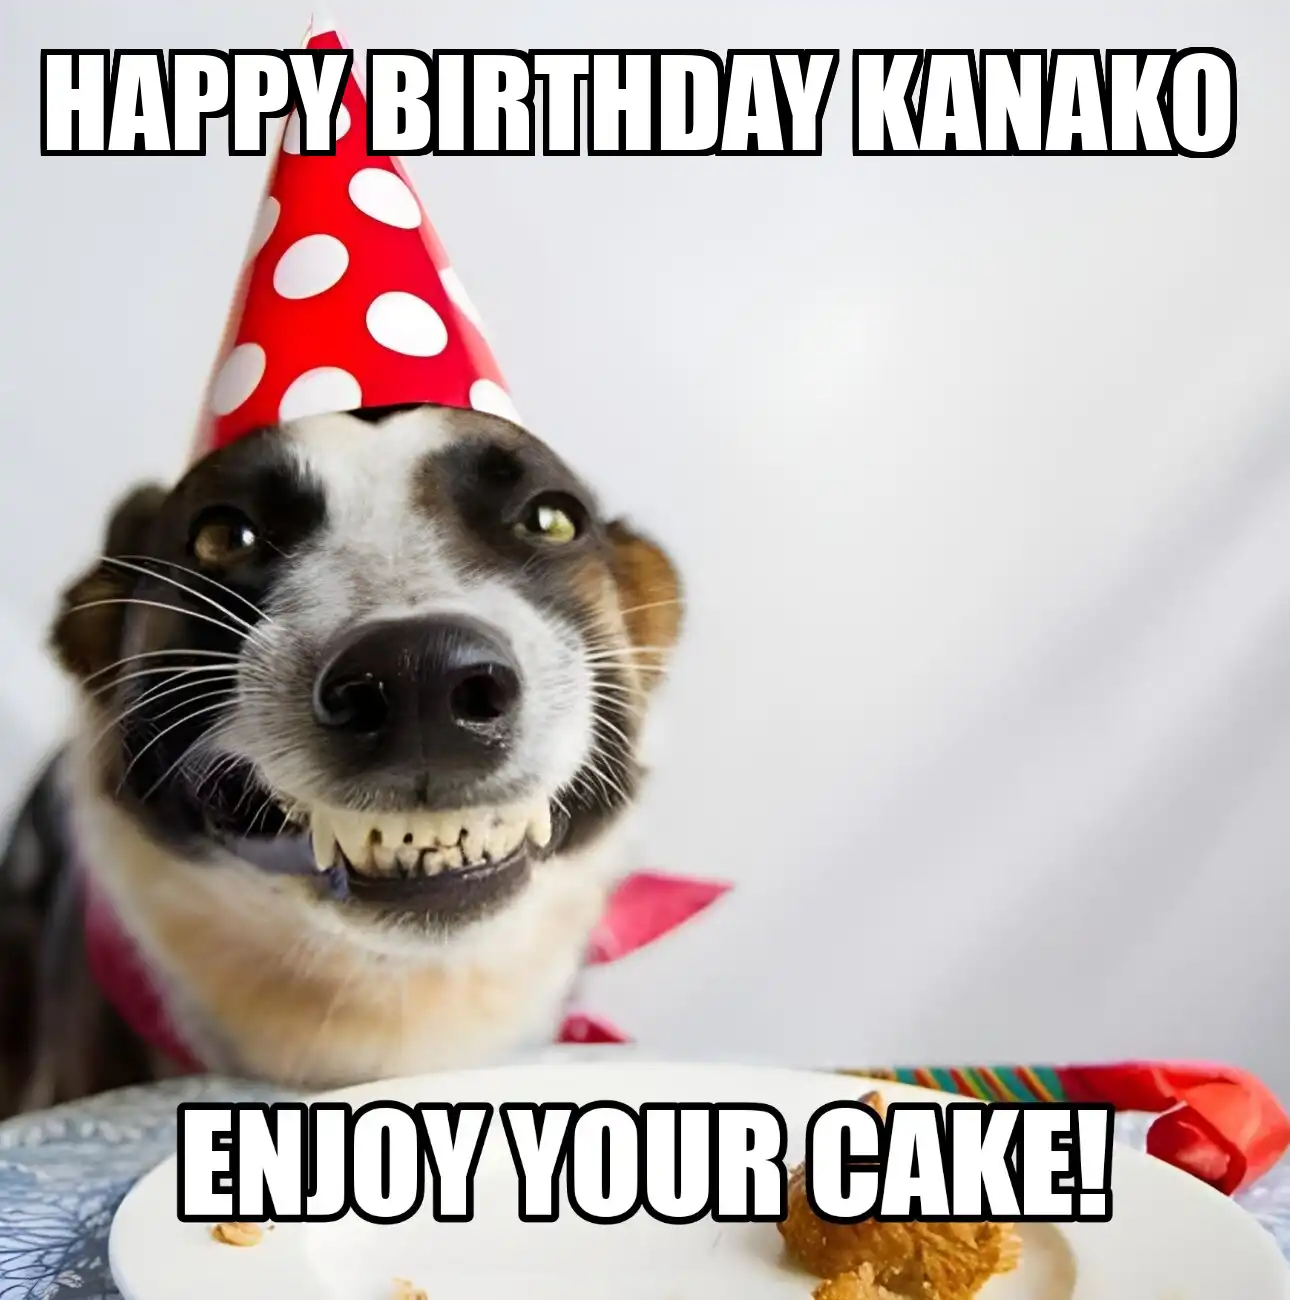 Happy Birthday Kanako Enjoy Your Cake Dog Meme